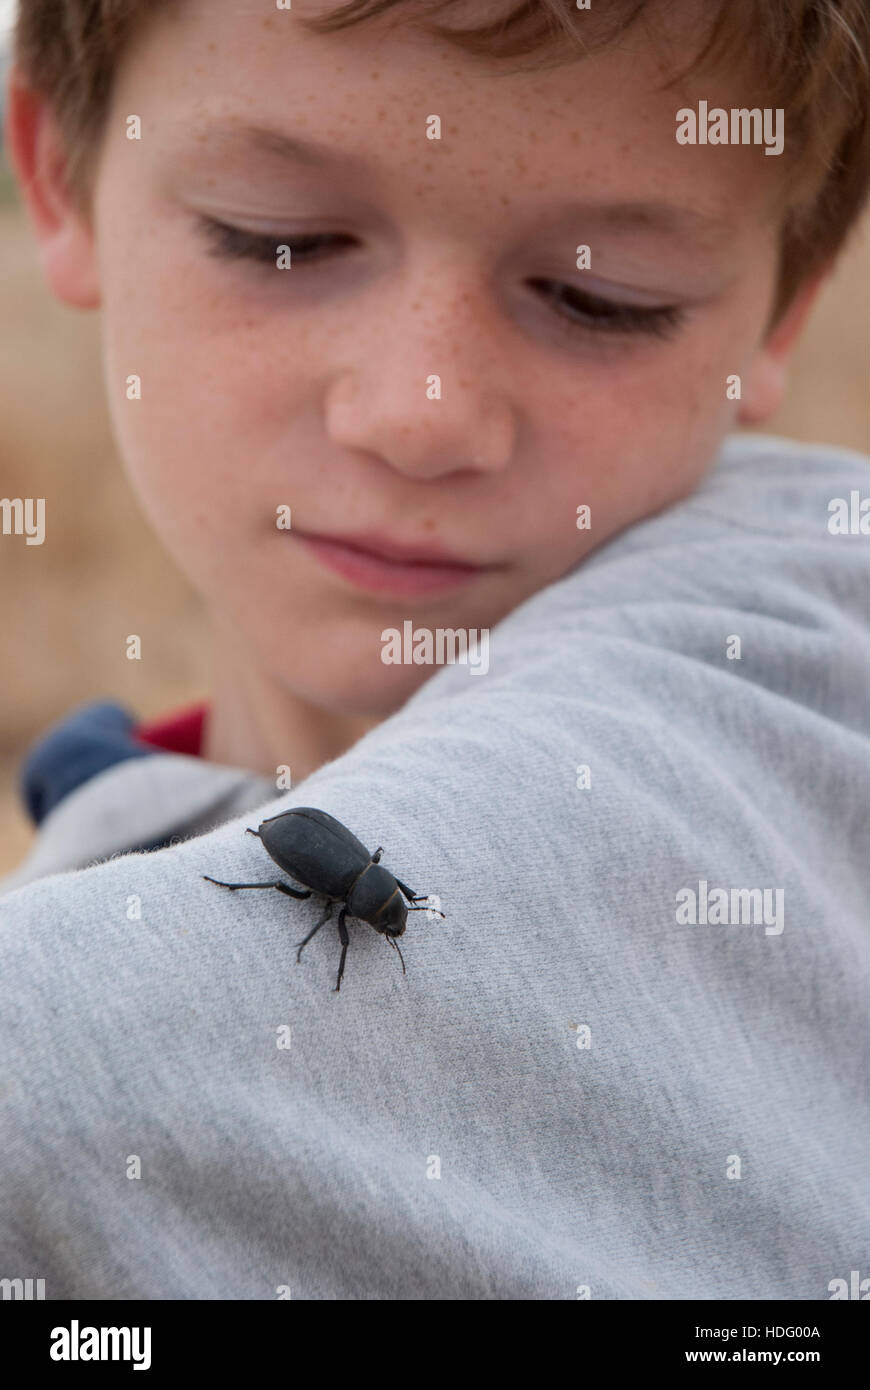 Un niño mira un escarabajo negro que ha aterrizado en su antebrazo. Foto de stock